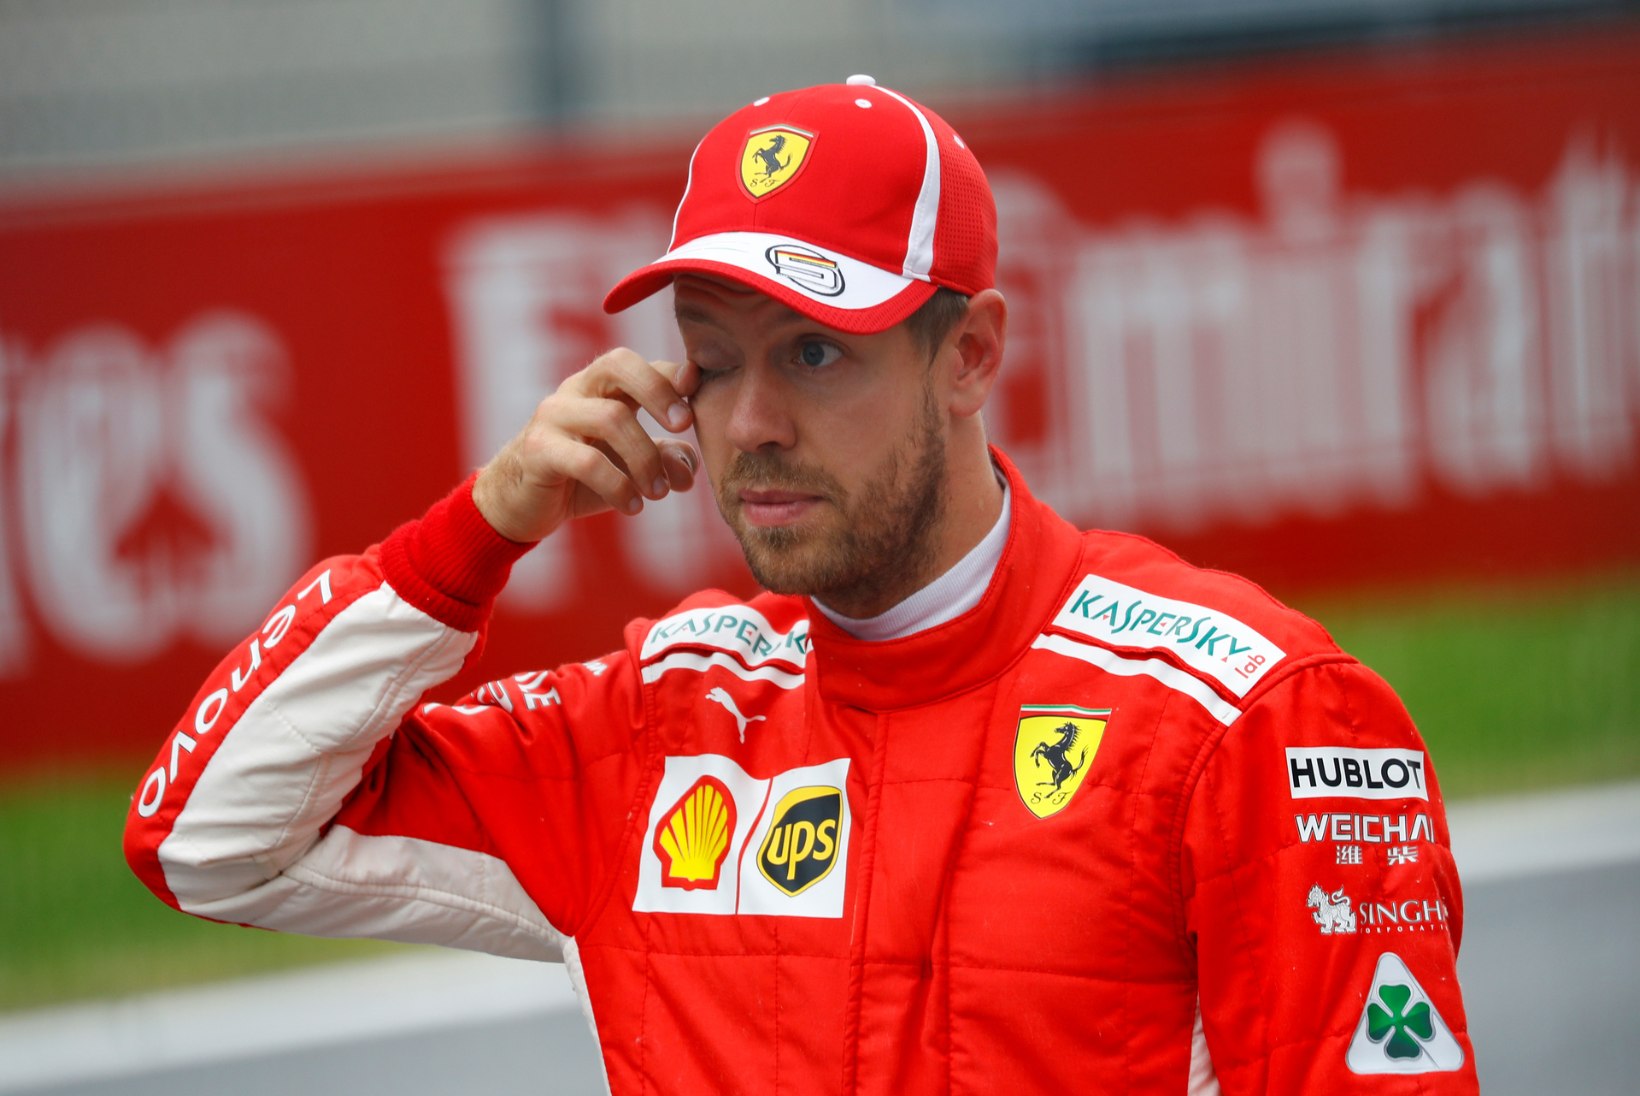 Miks Vettel nii tihti vigu teeb? Pereprobleemid? Ülbus? Või midagi muud?